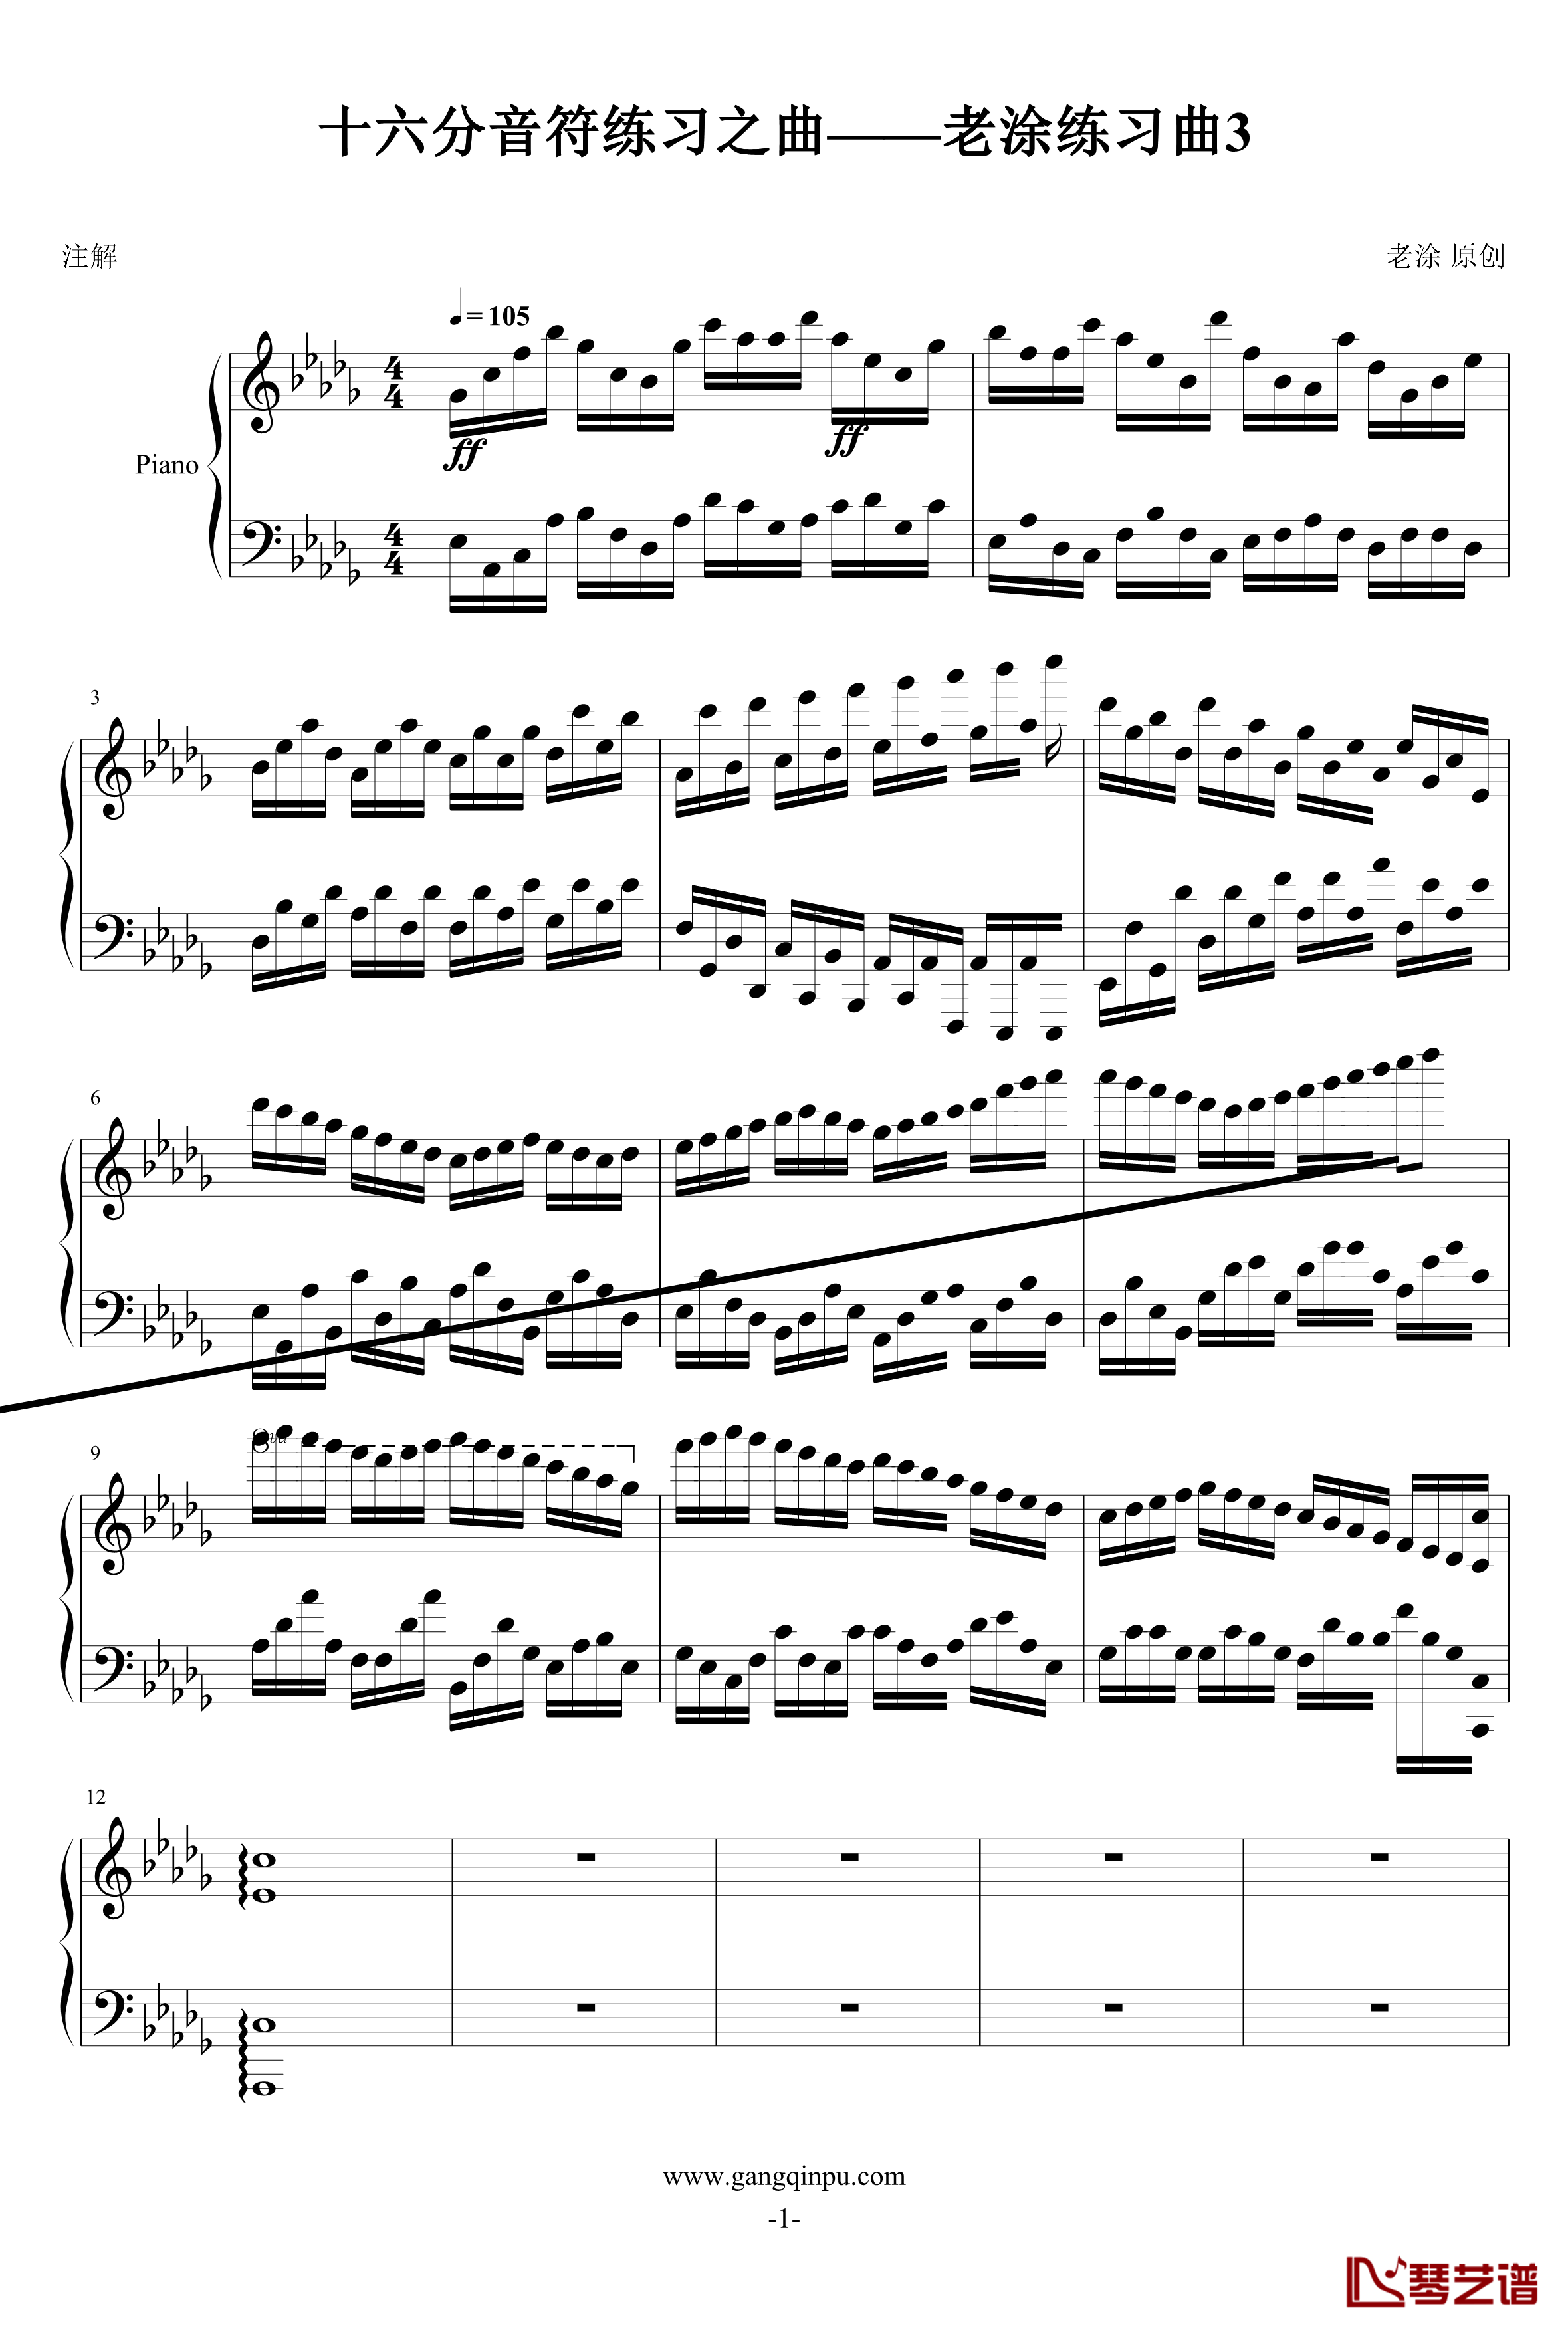 十六分音符之练习曲——老涂练习曲3钢琴谱-老涂1